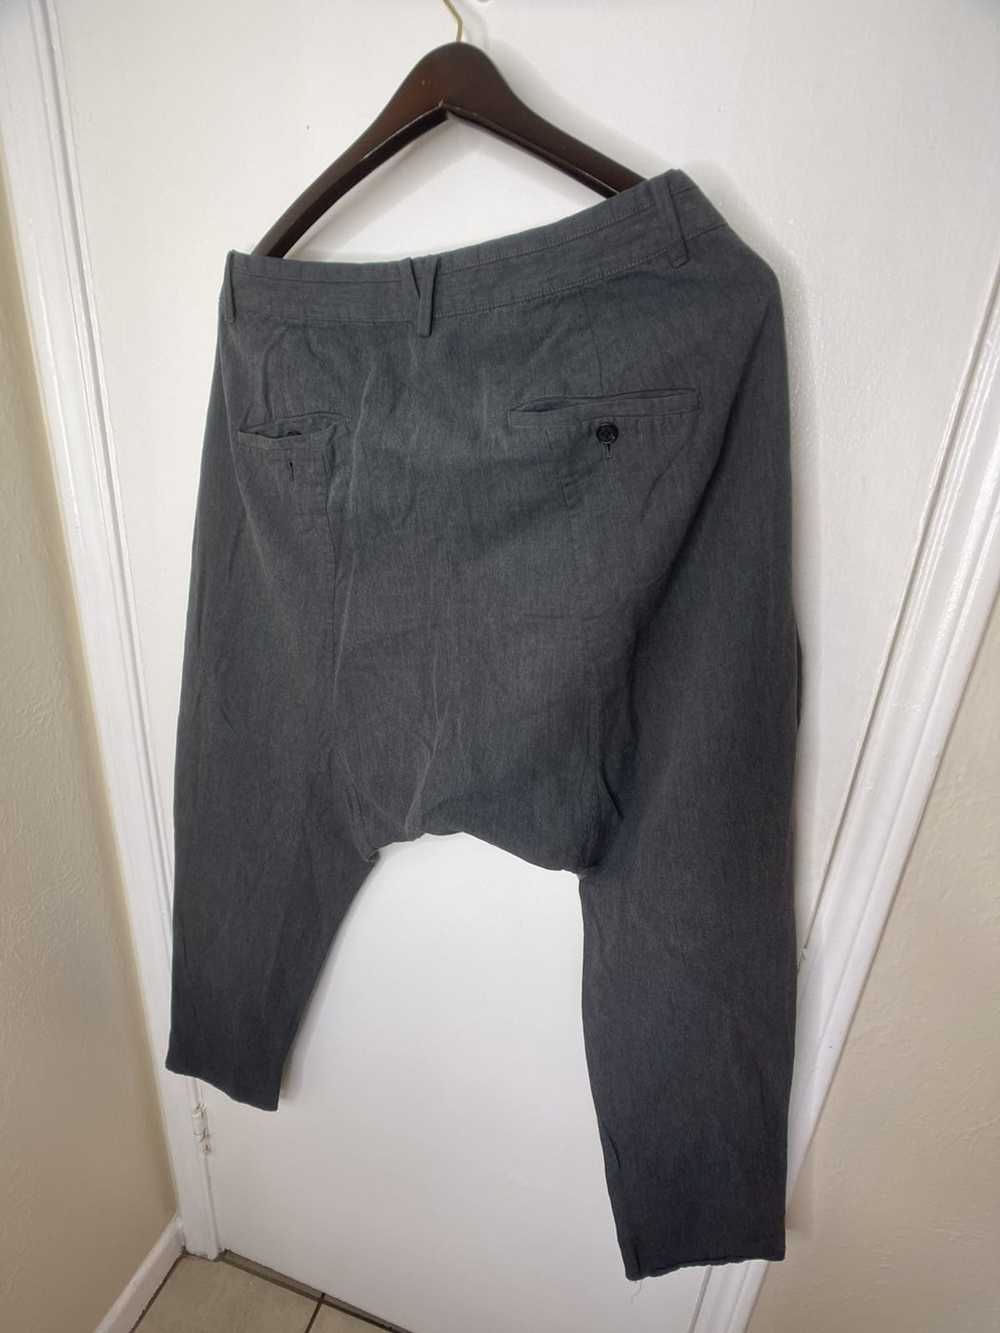 Allsaints Harem cut trousers (pants) - image 6